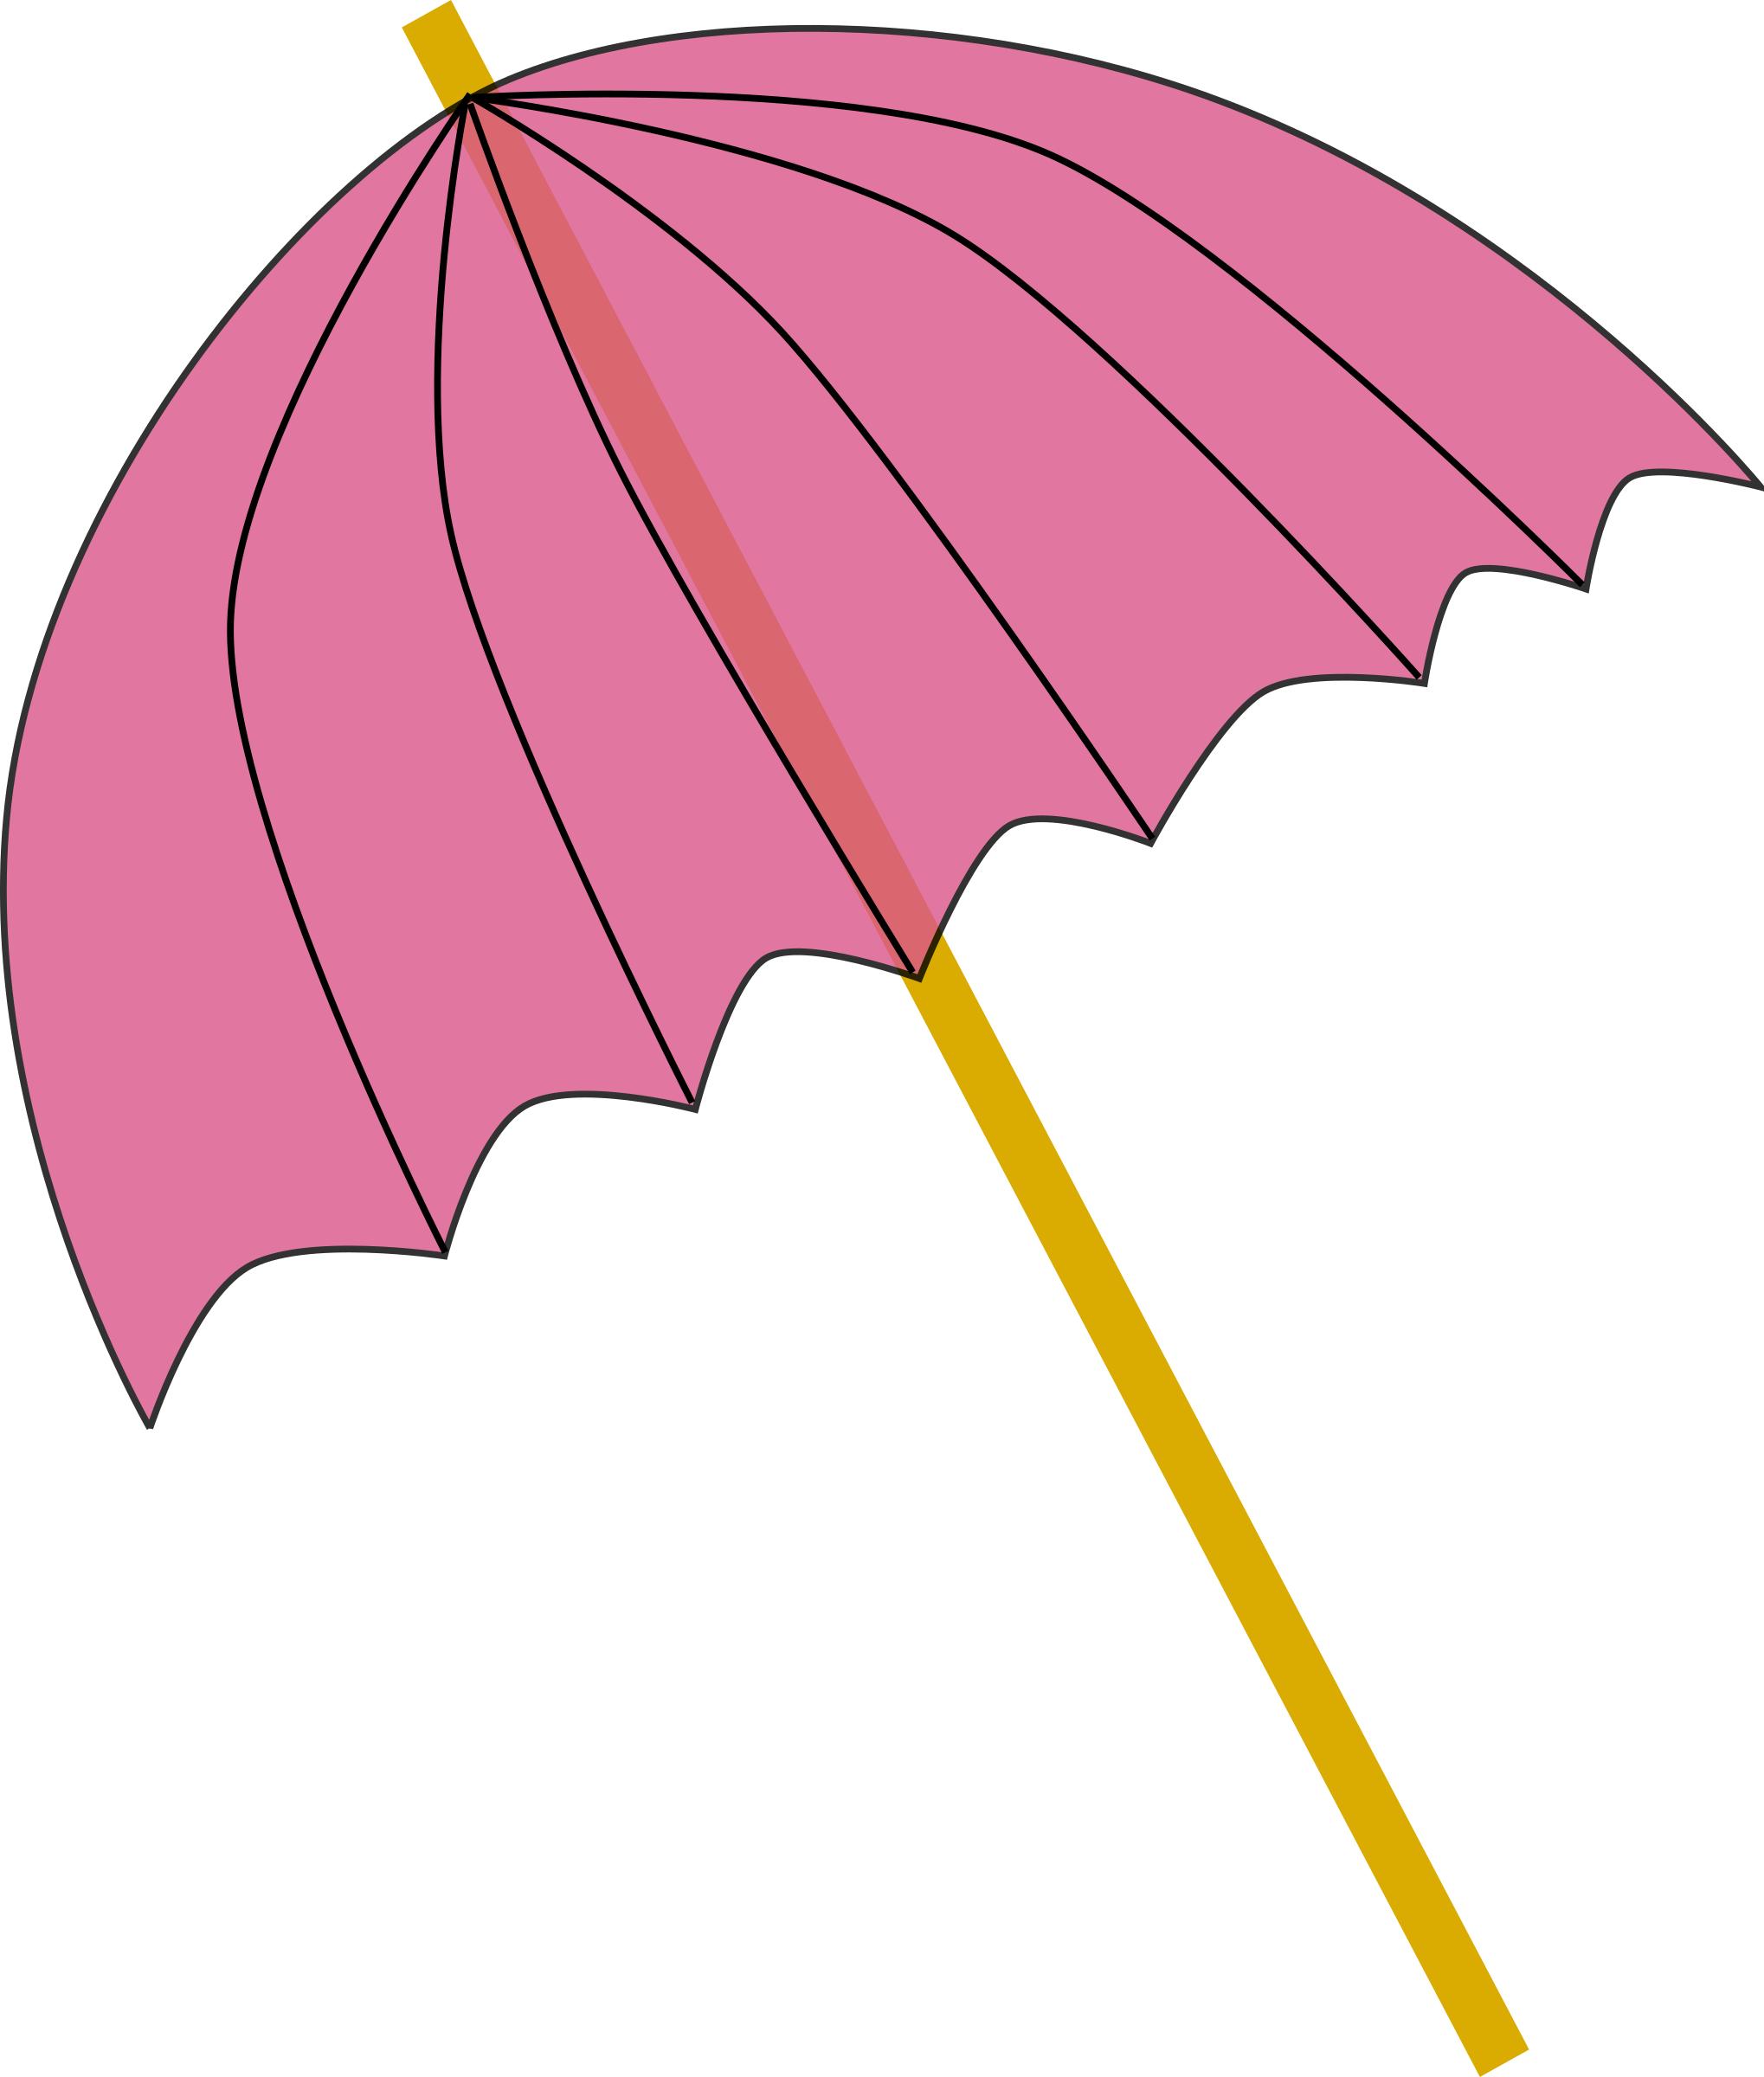 Umbrella / Parasol pink tranparent png